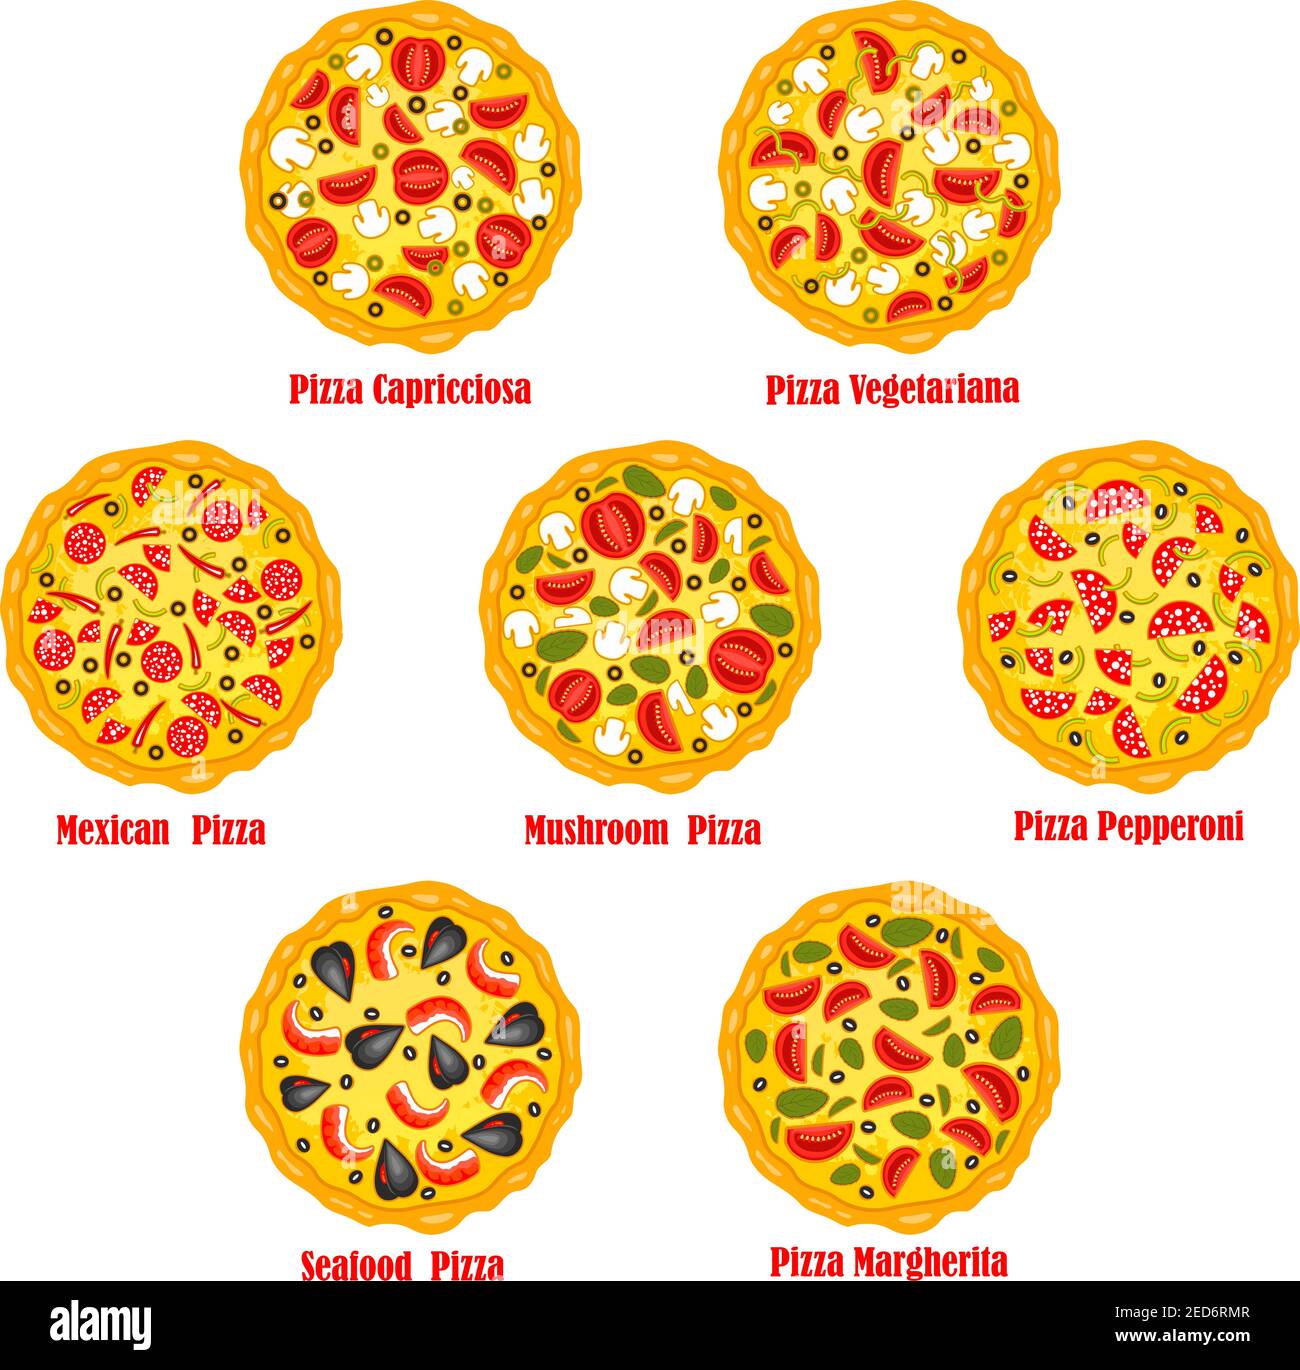 тех карта пиццы пепперони фото 40